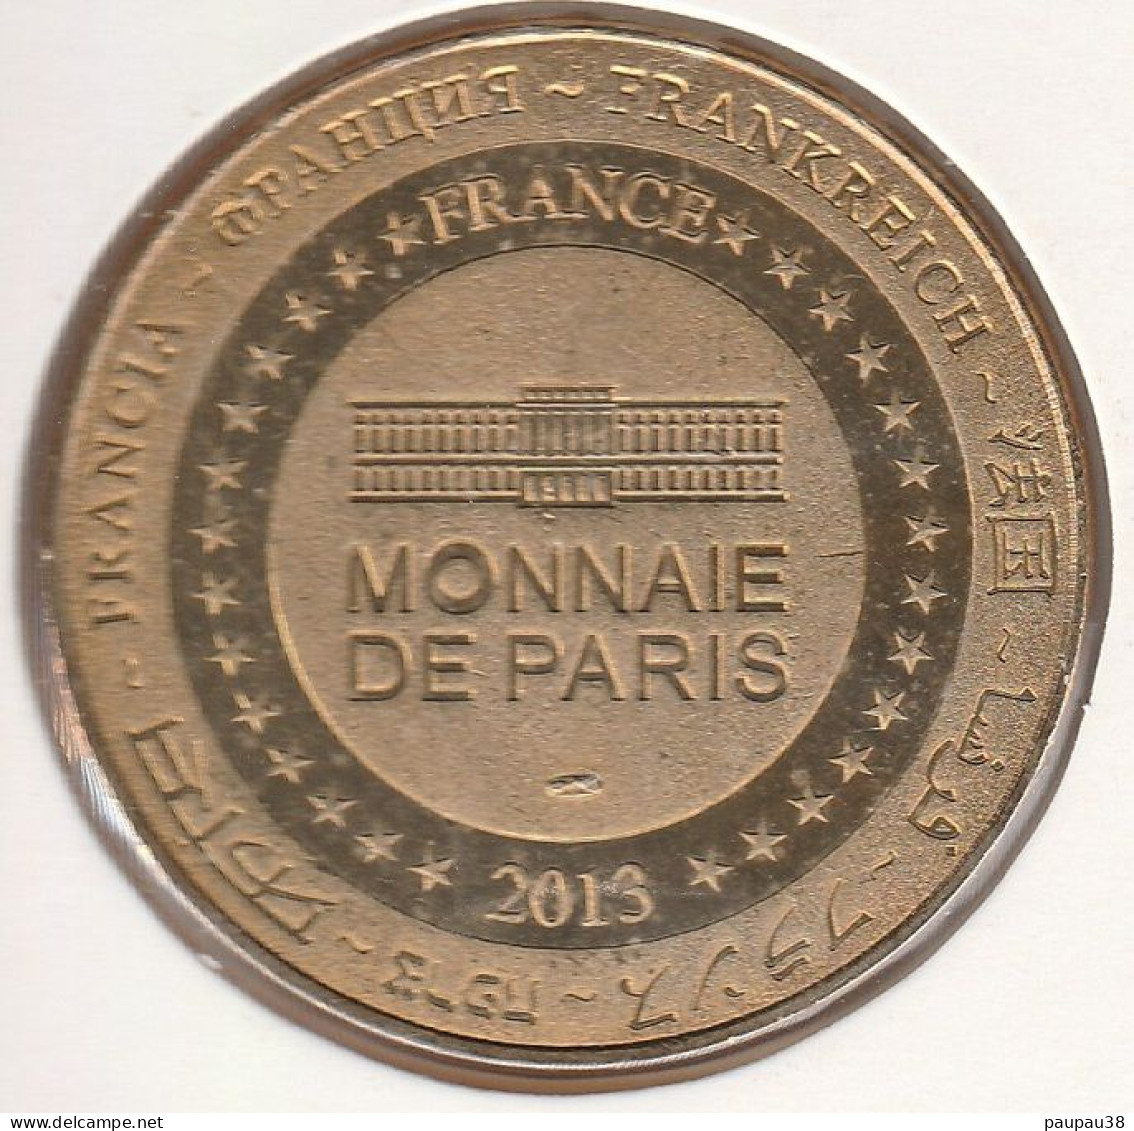 MONNAIE DE PARIS 2013 - 30 UZES Musée Du Bonbon Haribo - Boîte Ronde - 2013